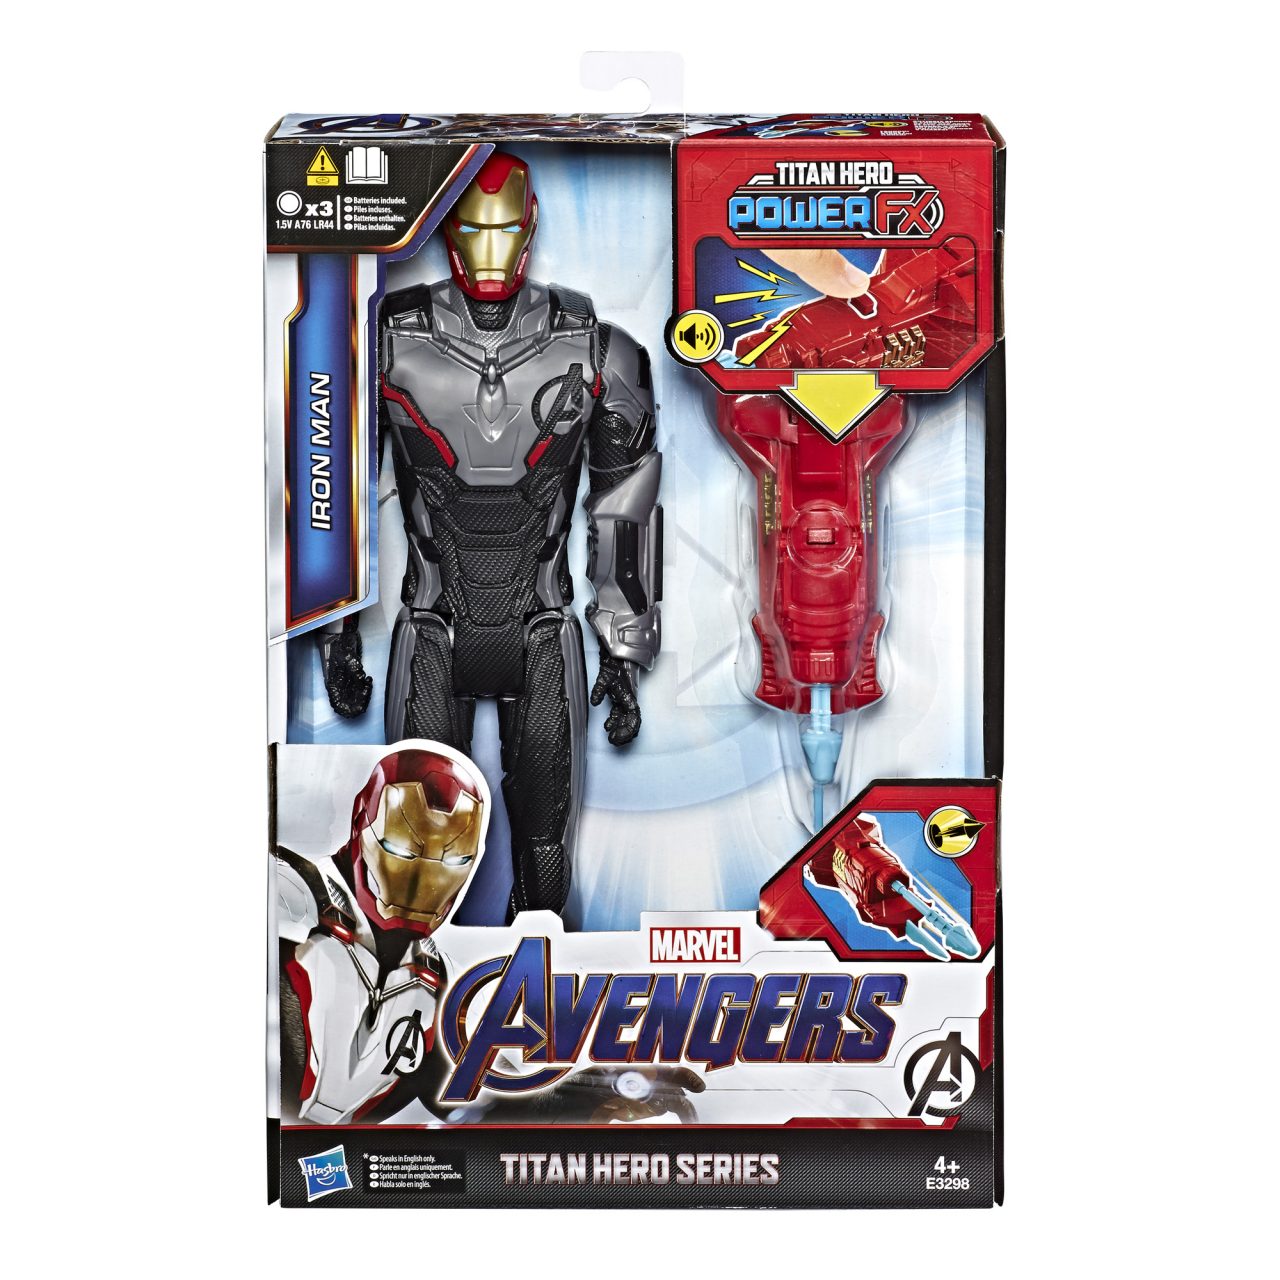 MARVEL AVENGERS: ENDGAME TITAN HERO POWER FX 12-INCH Figures - Iron Man